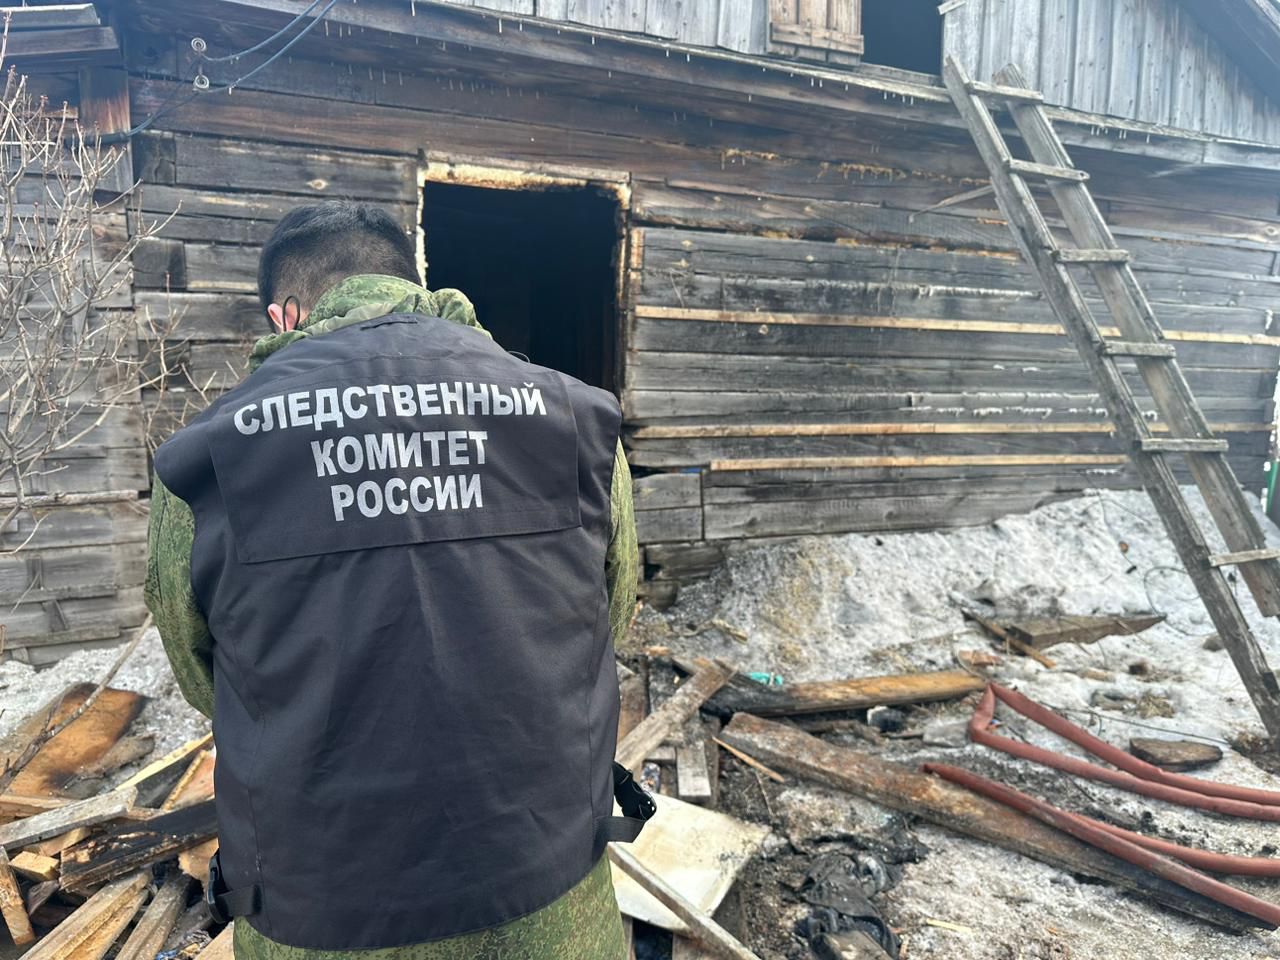 Последствия пожара в Канском районе, где погибла годовалая девочка